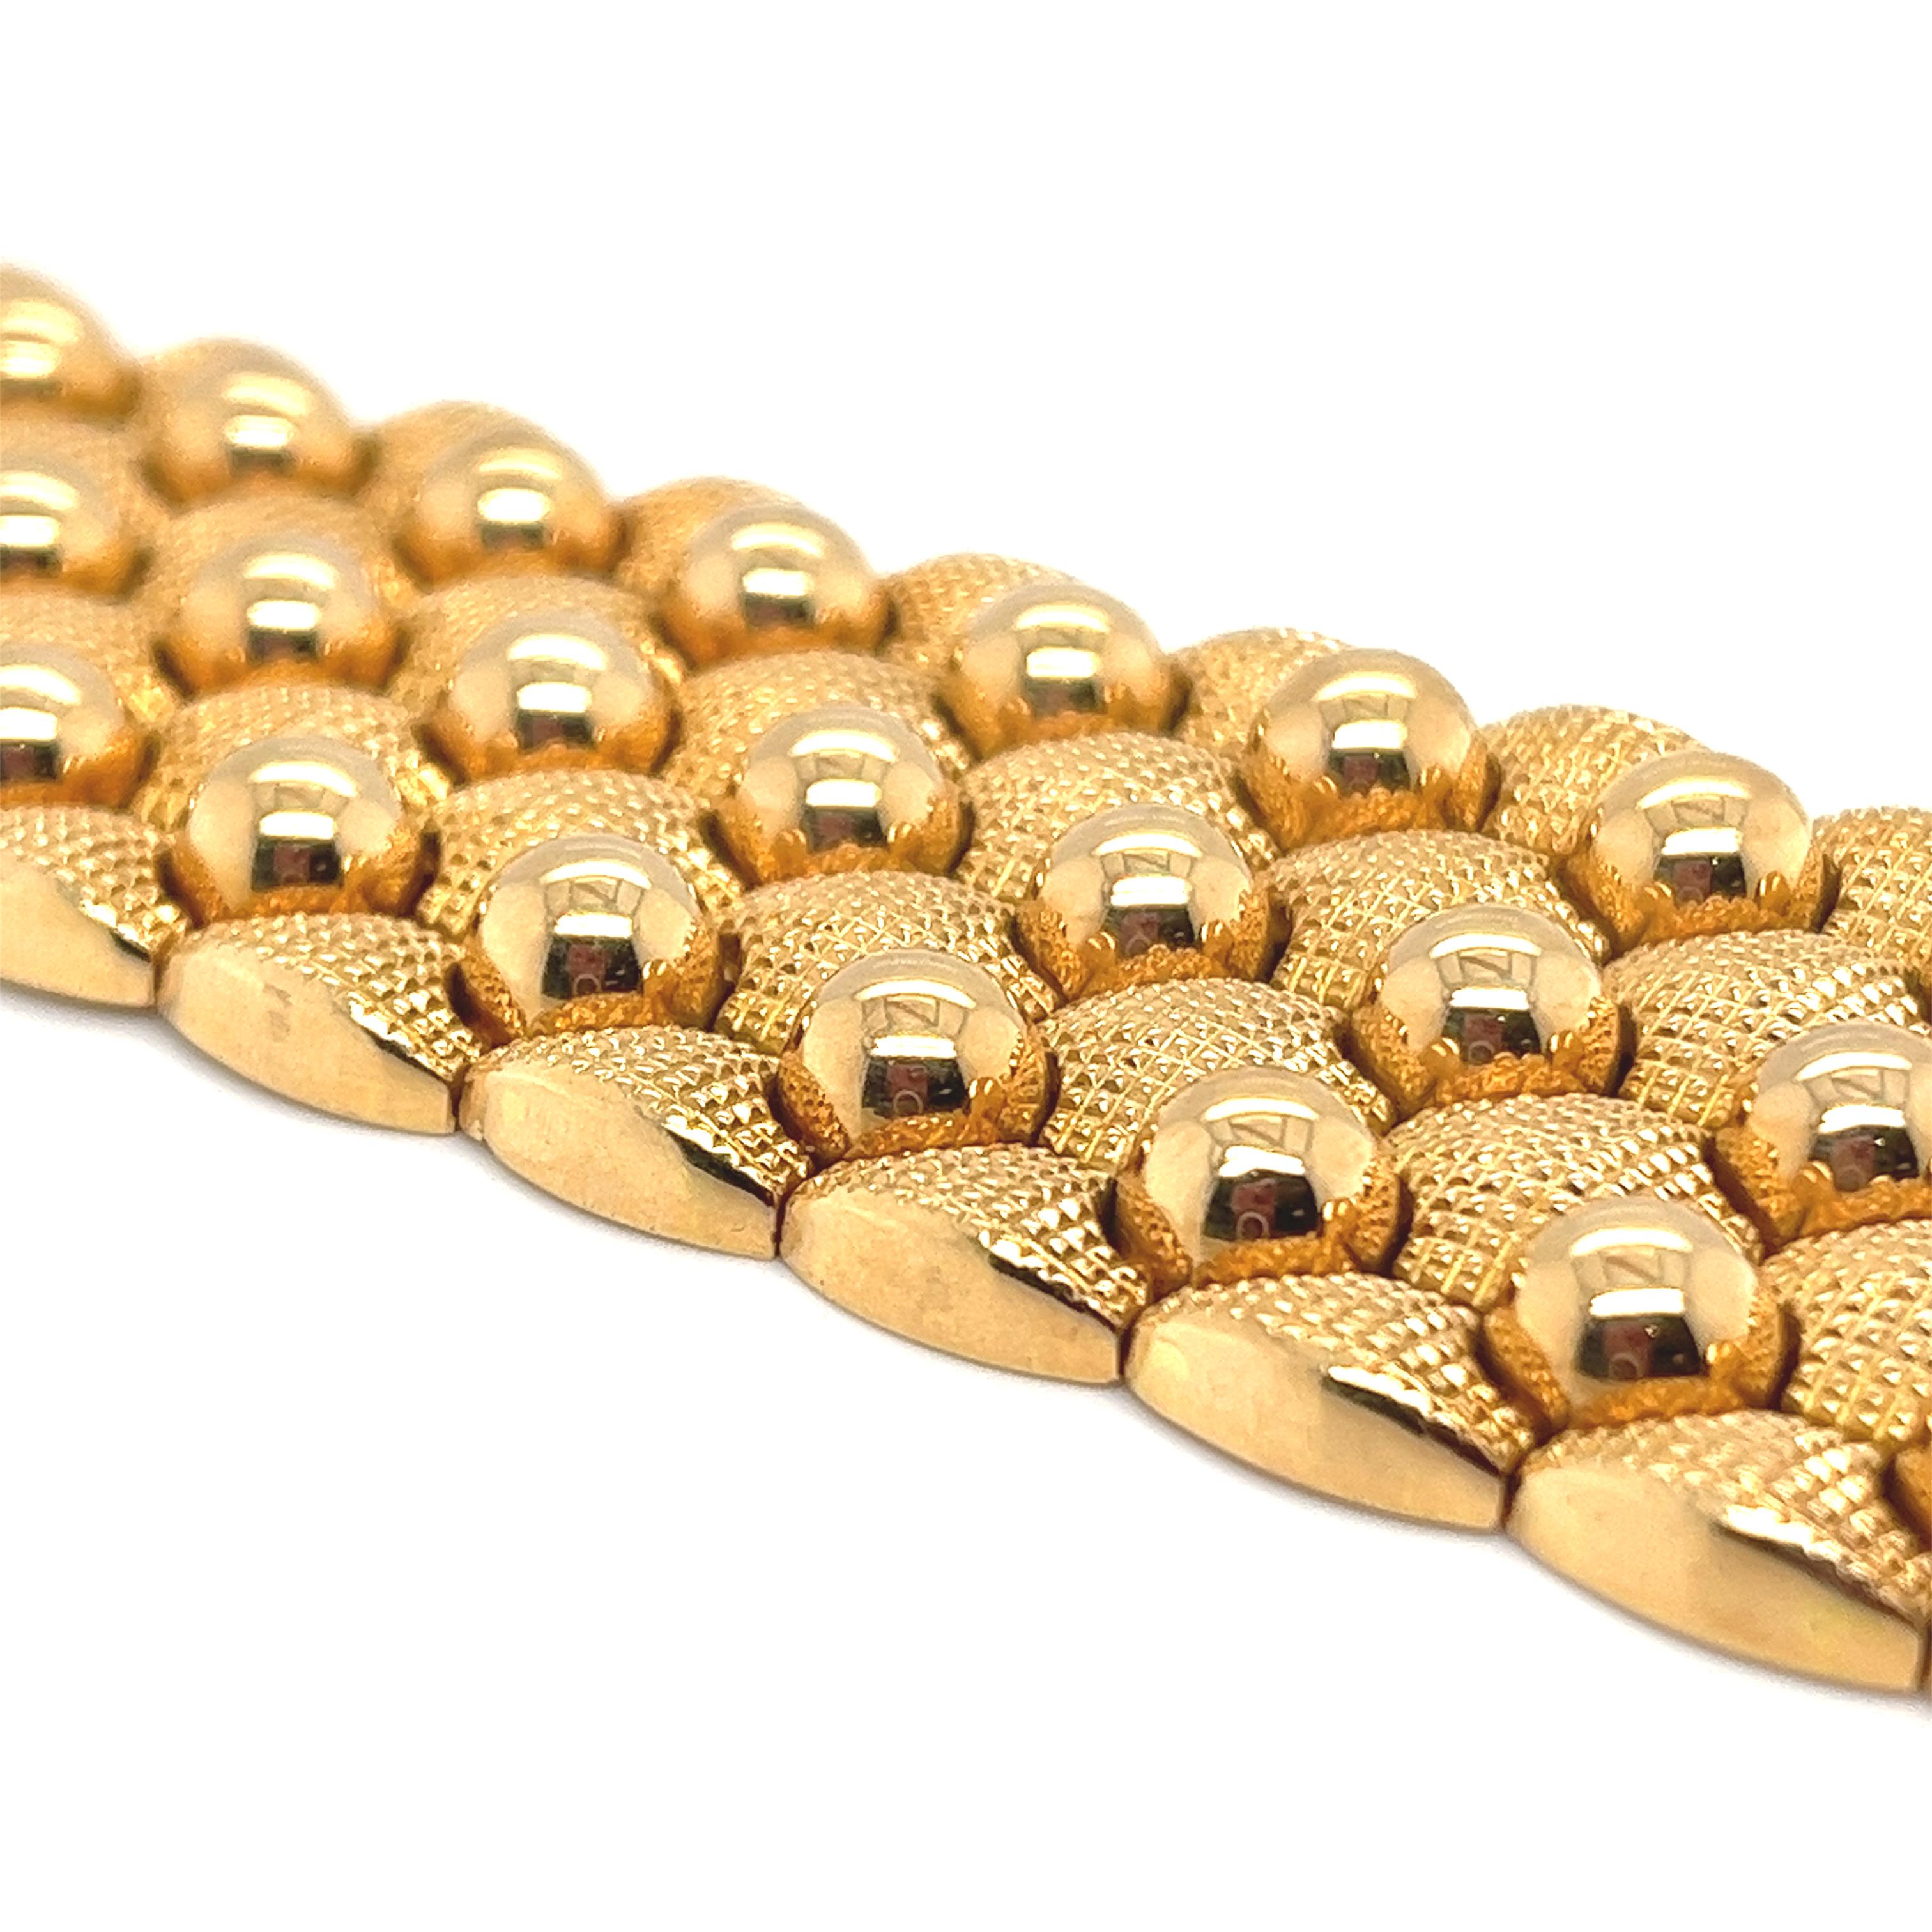 Einzigartiges italienisches Retro-Armband aus 18 Karat Roségold, 1940er Jahre.
Das breite, flexible Armband aus 18 Karat Roségold besteht aus guillochierten Goldgliedern, die mit hochglanzpolierten Goldperlen durchsetzt sind. Sie wird durch eine